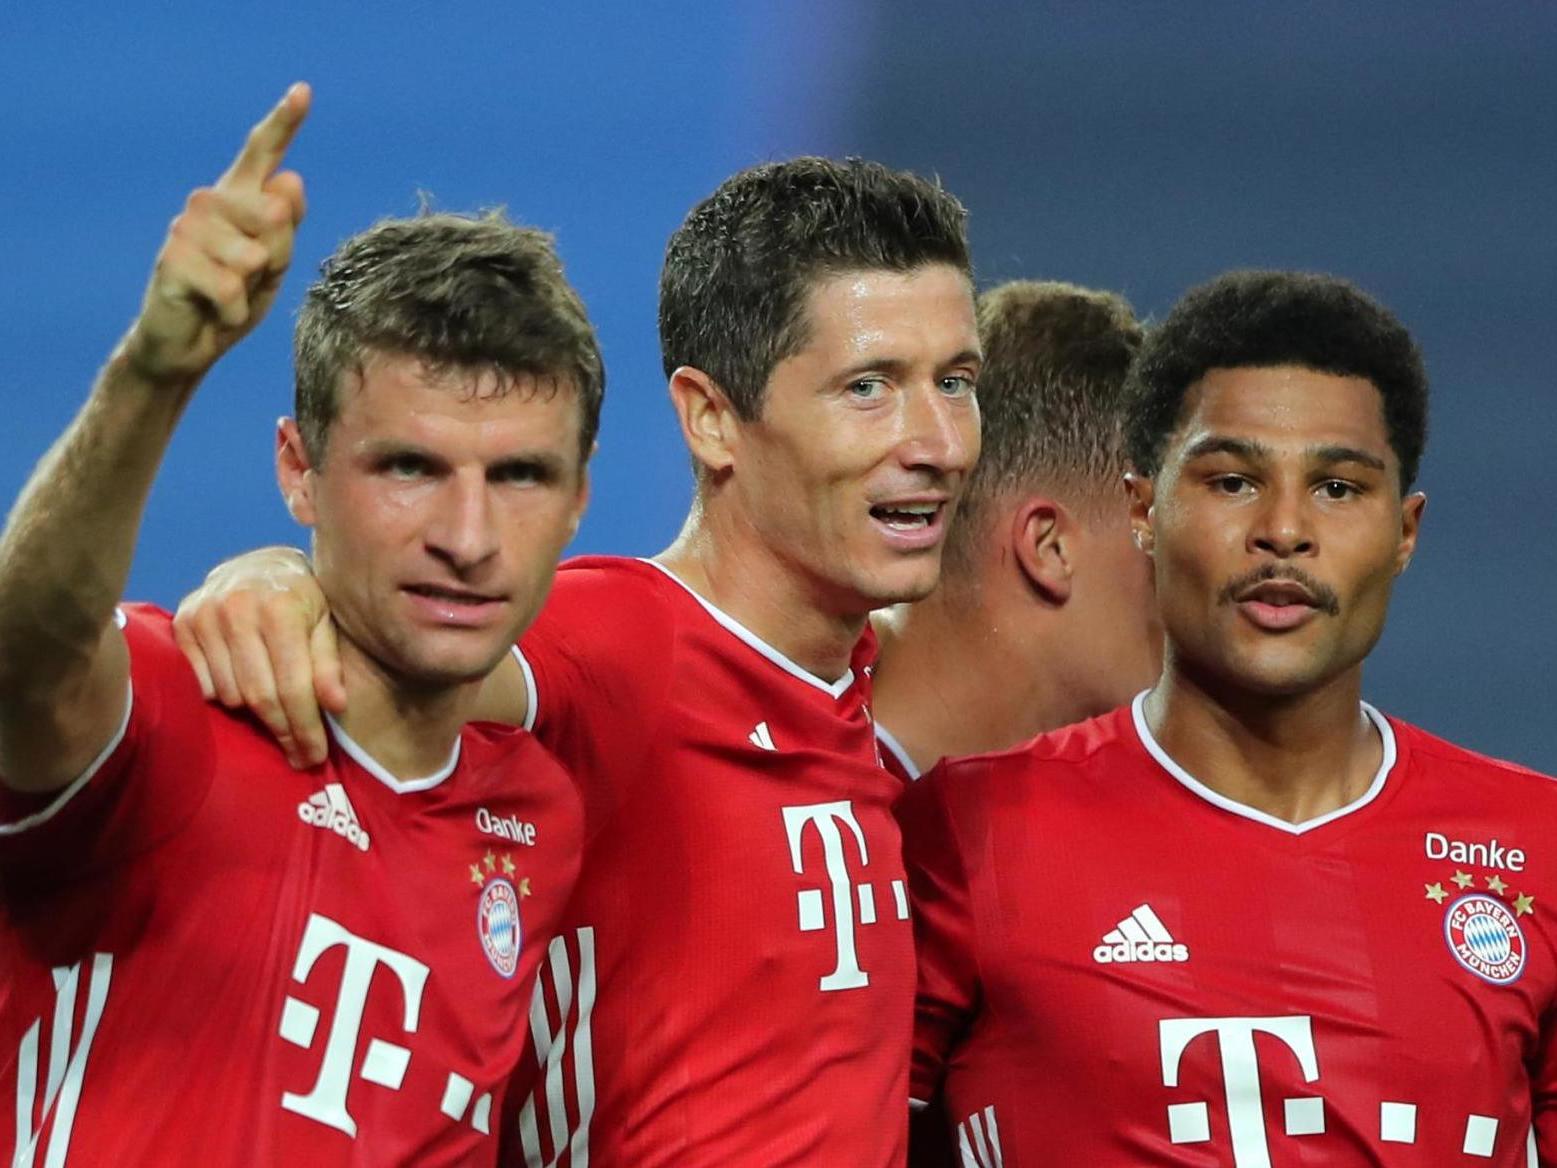 Serge Gnabry of Bayern Munich celebrates